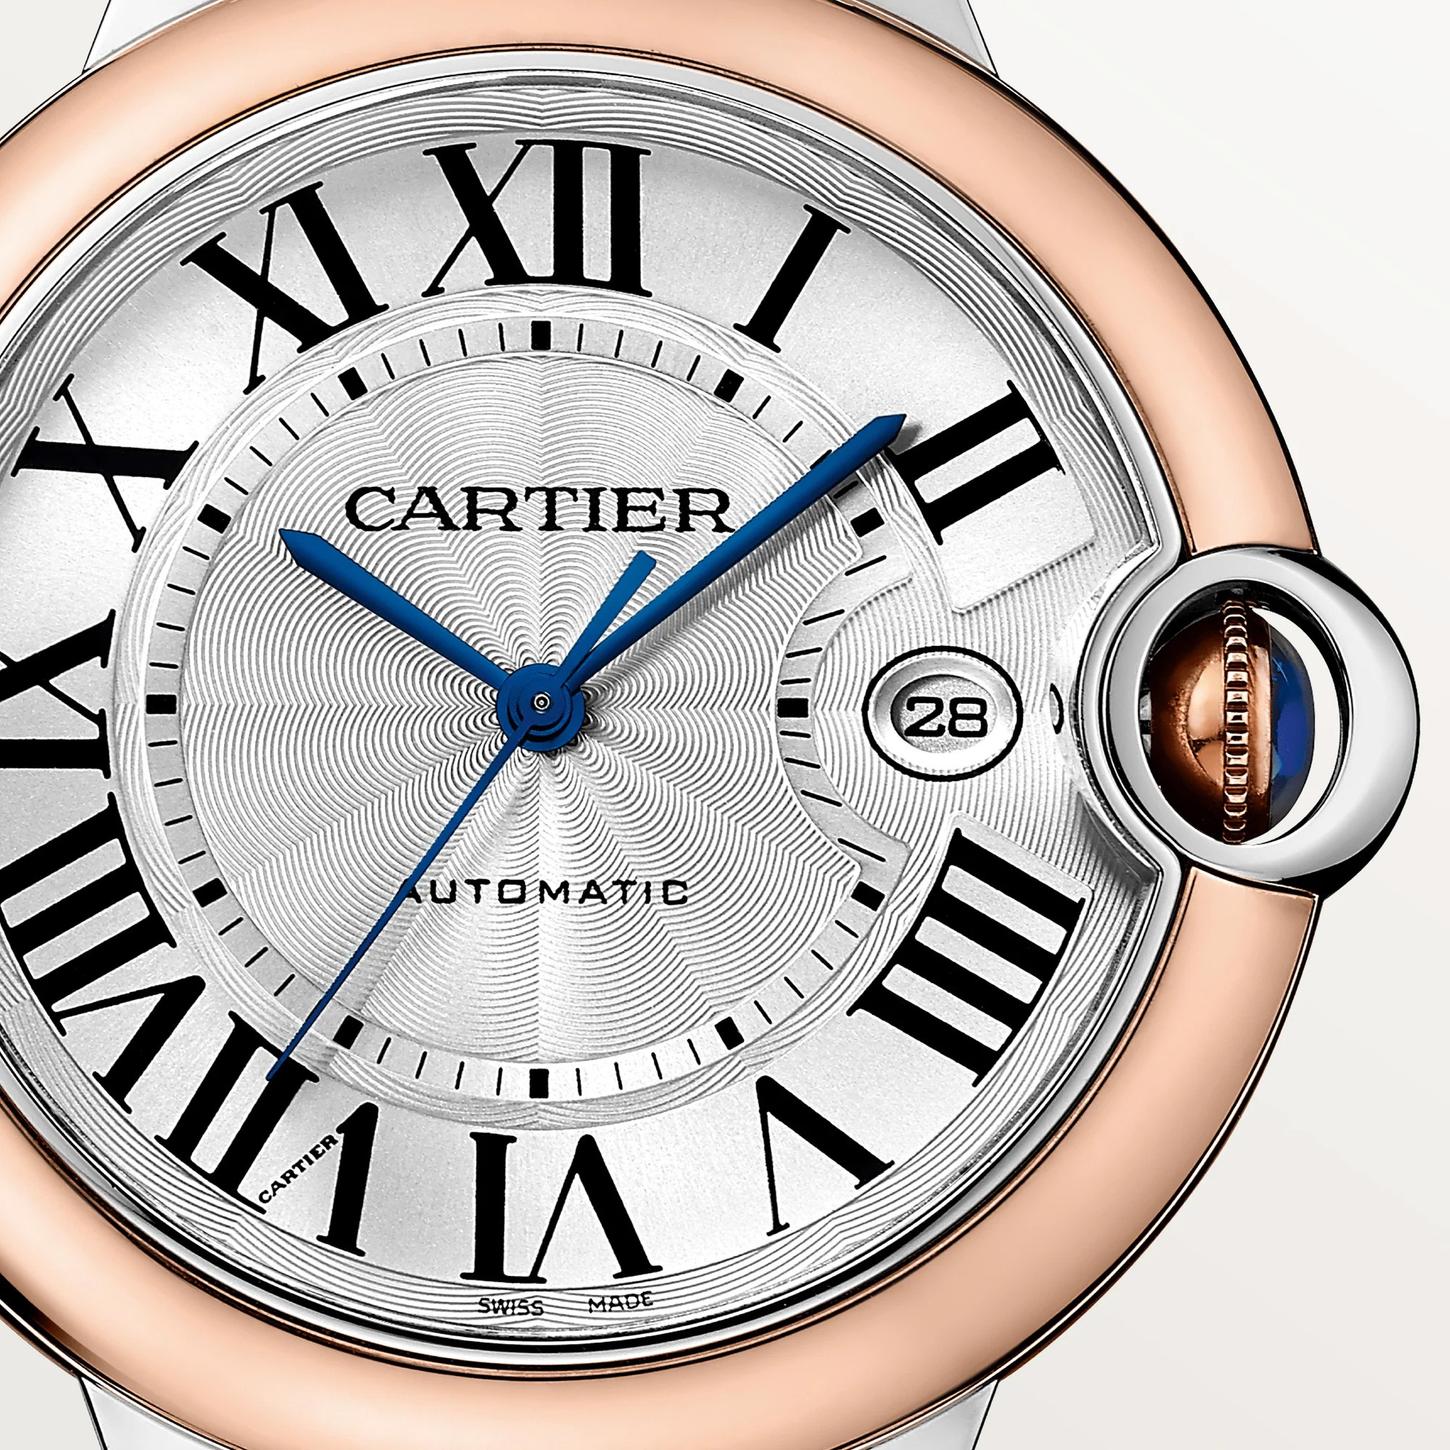 Ballon Bleu de Cartier Watch in Rose Gold, 42mm 0